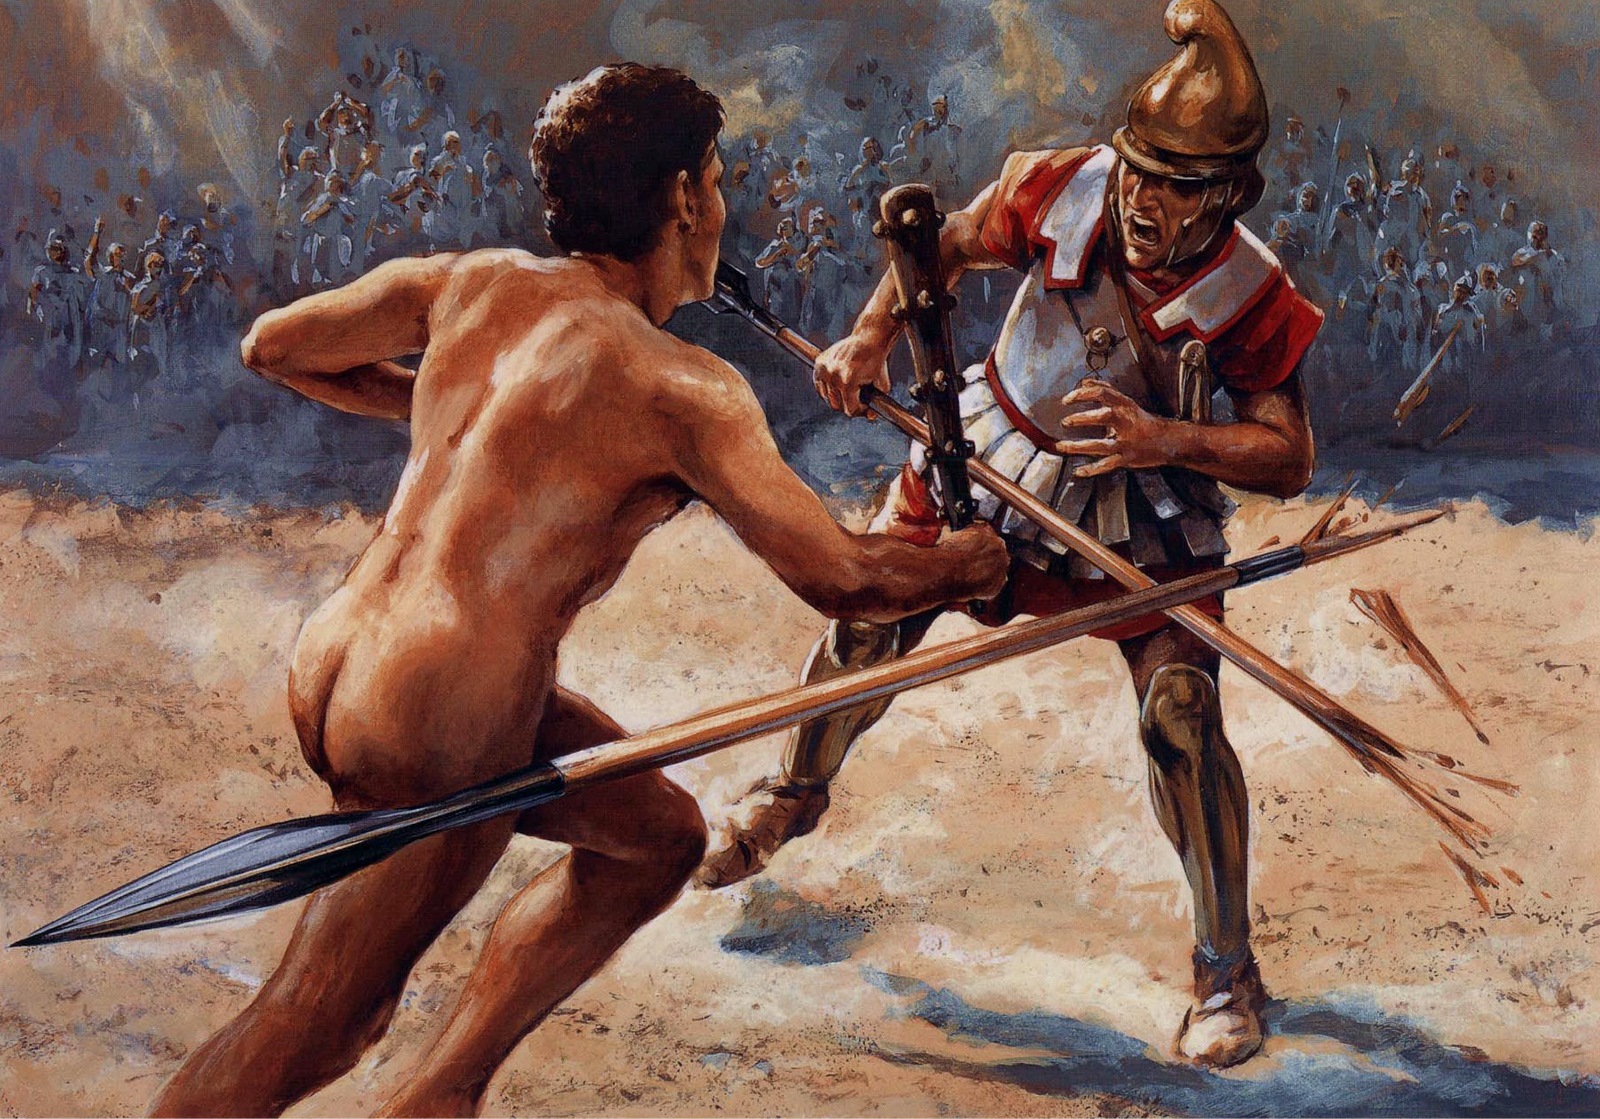 Nejdokonalejším oštěpem bylo římské pilum. Když byl oštěp vržen, provrtal štít protivníka, jeho tělo a zabodl se ještě do štítu dalšího muže.